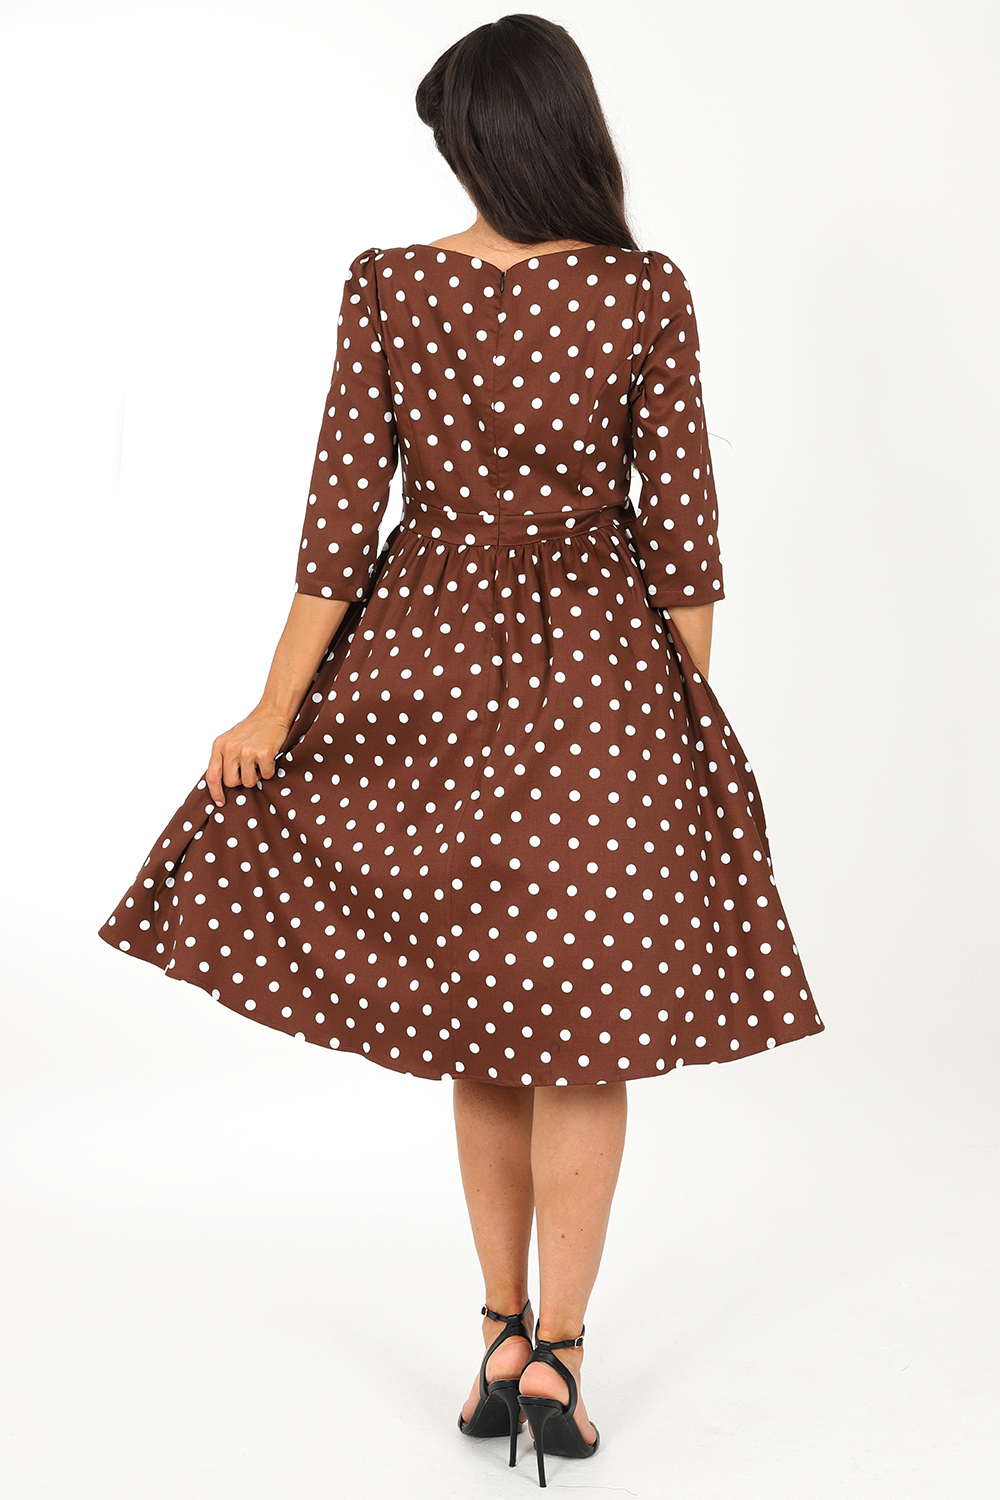 Milana Polka Dot Swing Dress in Brown